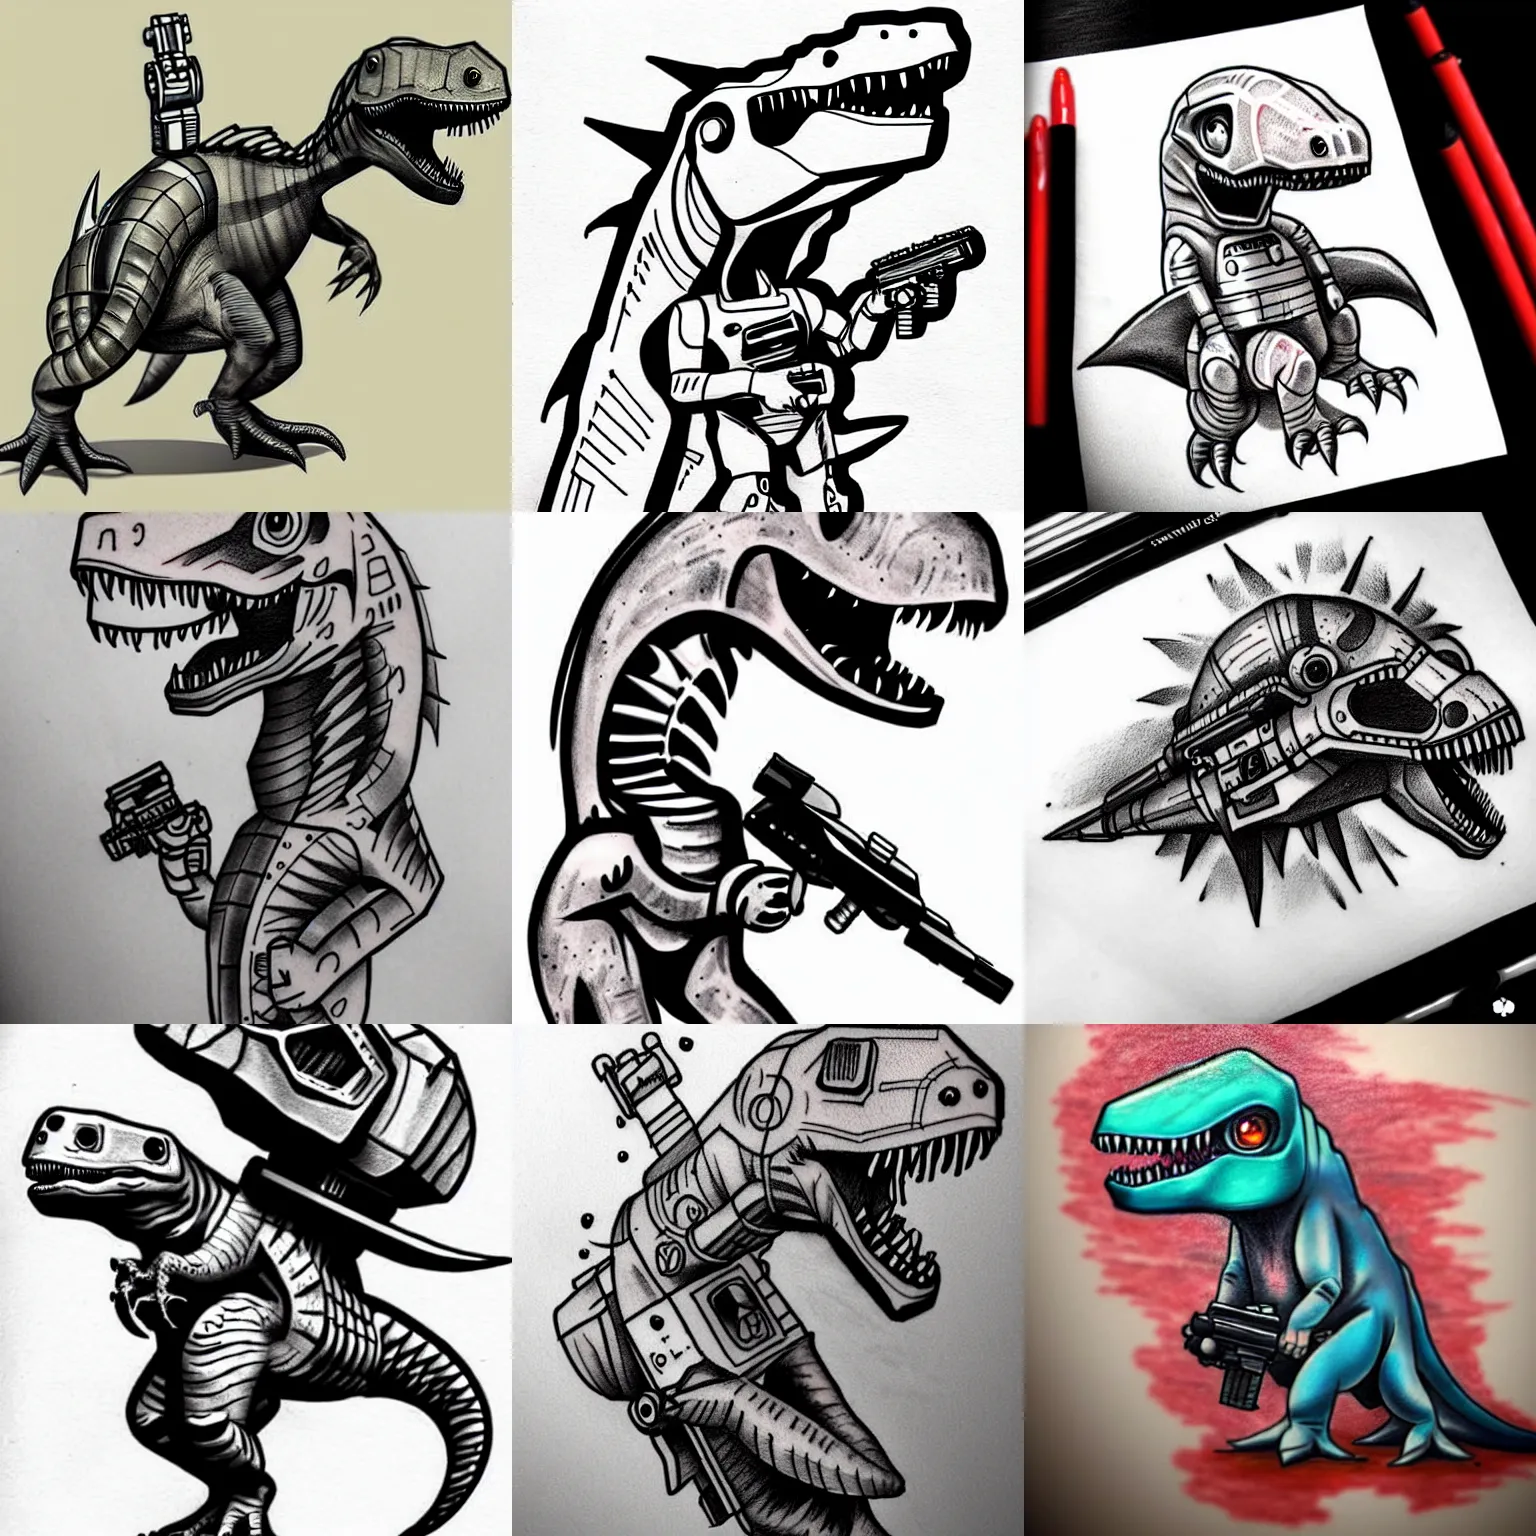 Prompt: tattoo sketch cute dinosaur with blaster gun sci - fi, futuristic, cyberpunk